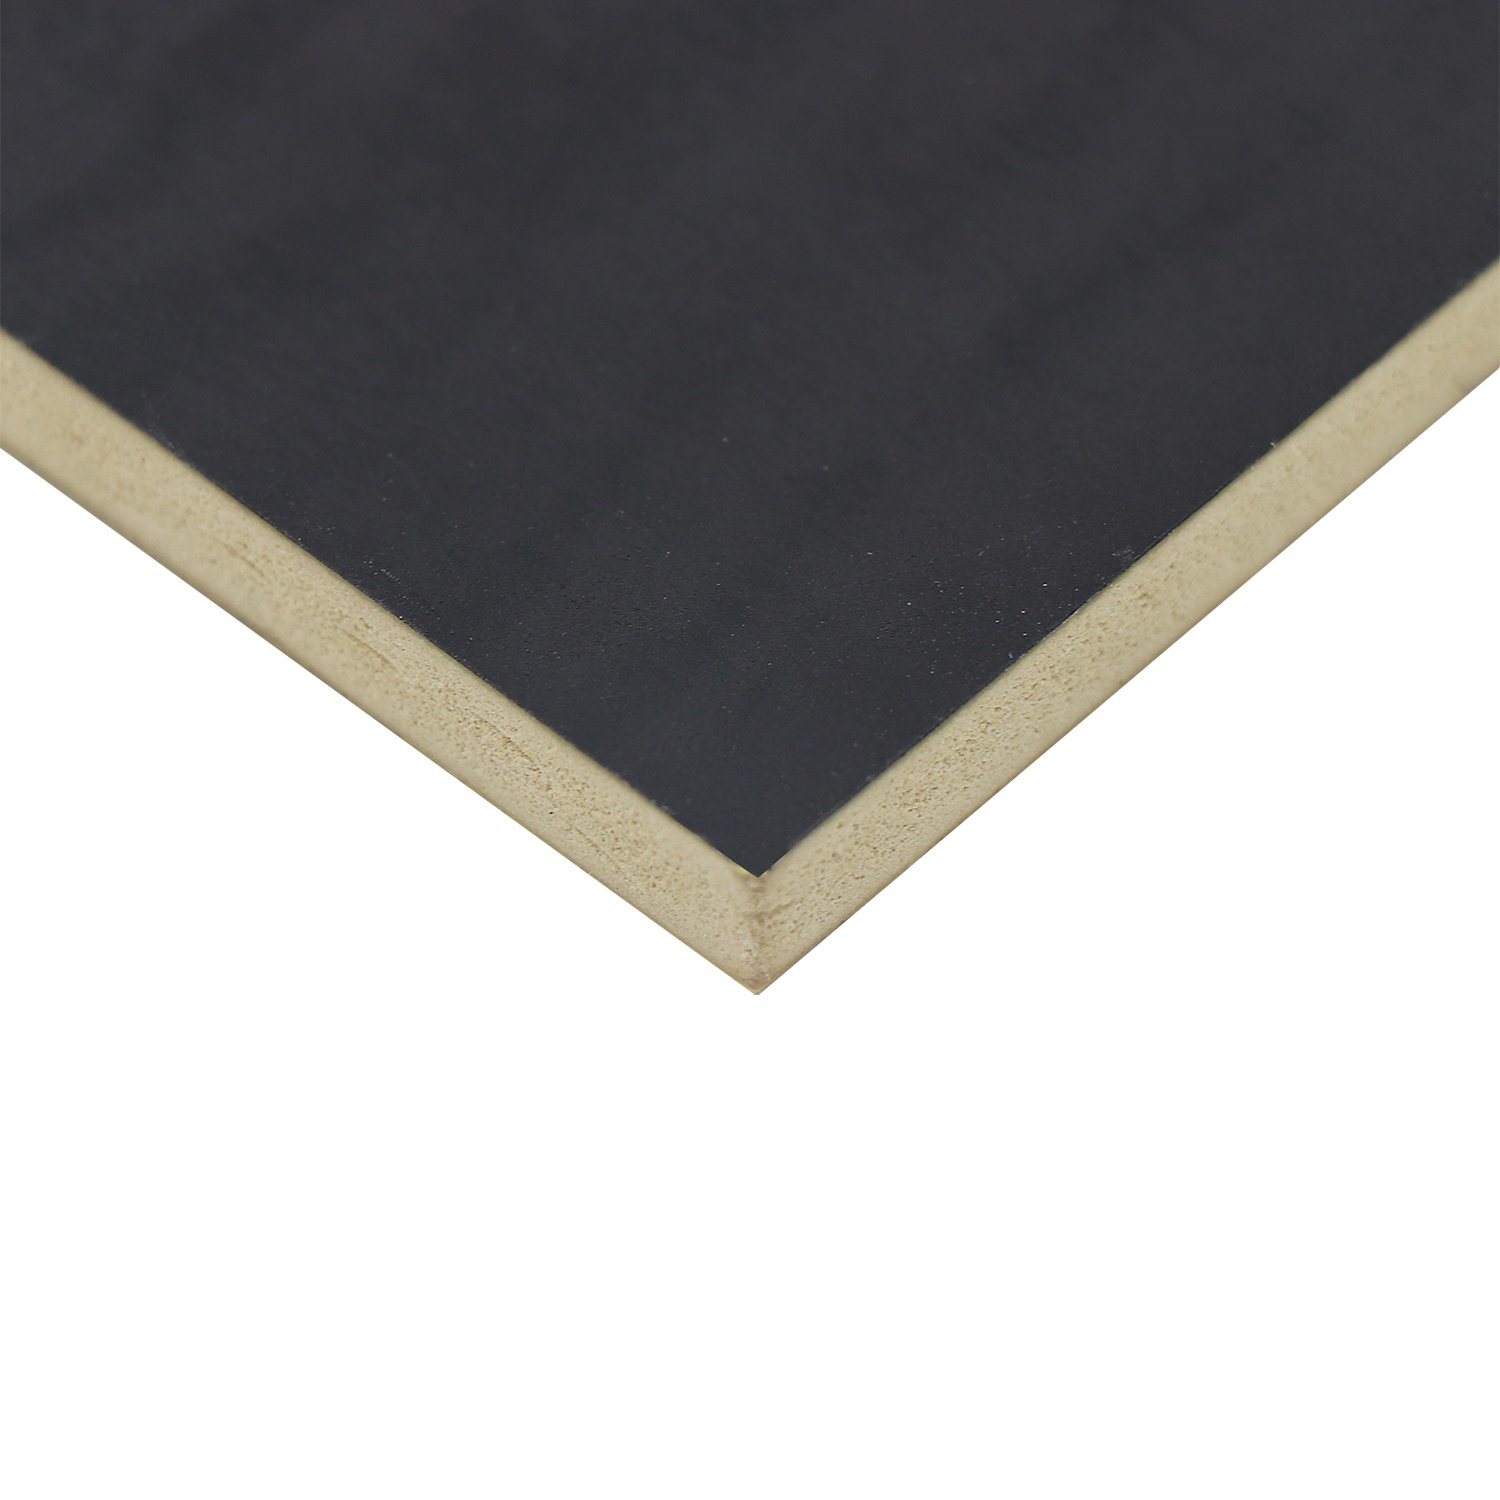 Black Grain Melamine Film Faced MDF 18mm Medium Density Fiberboard for Decoration